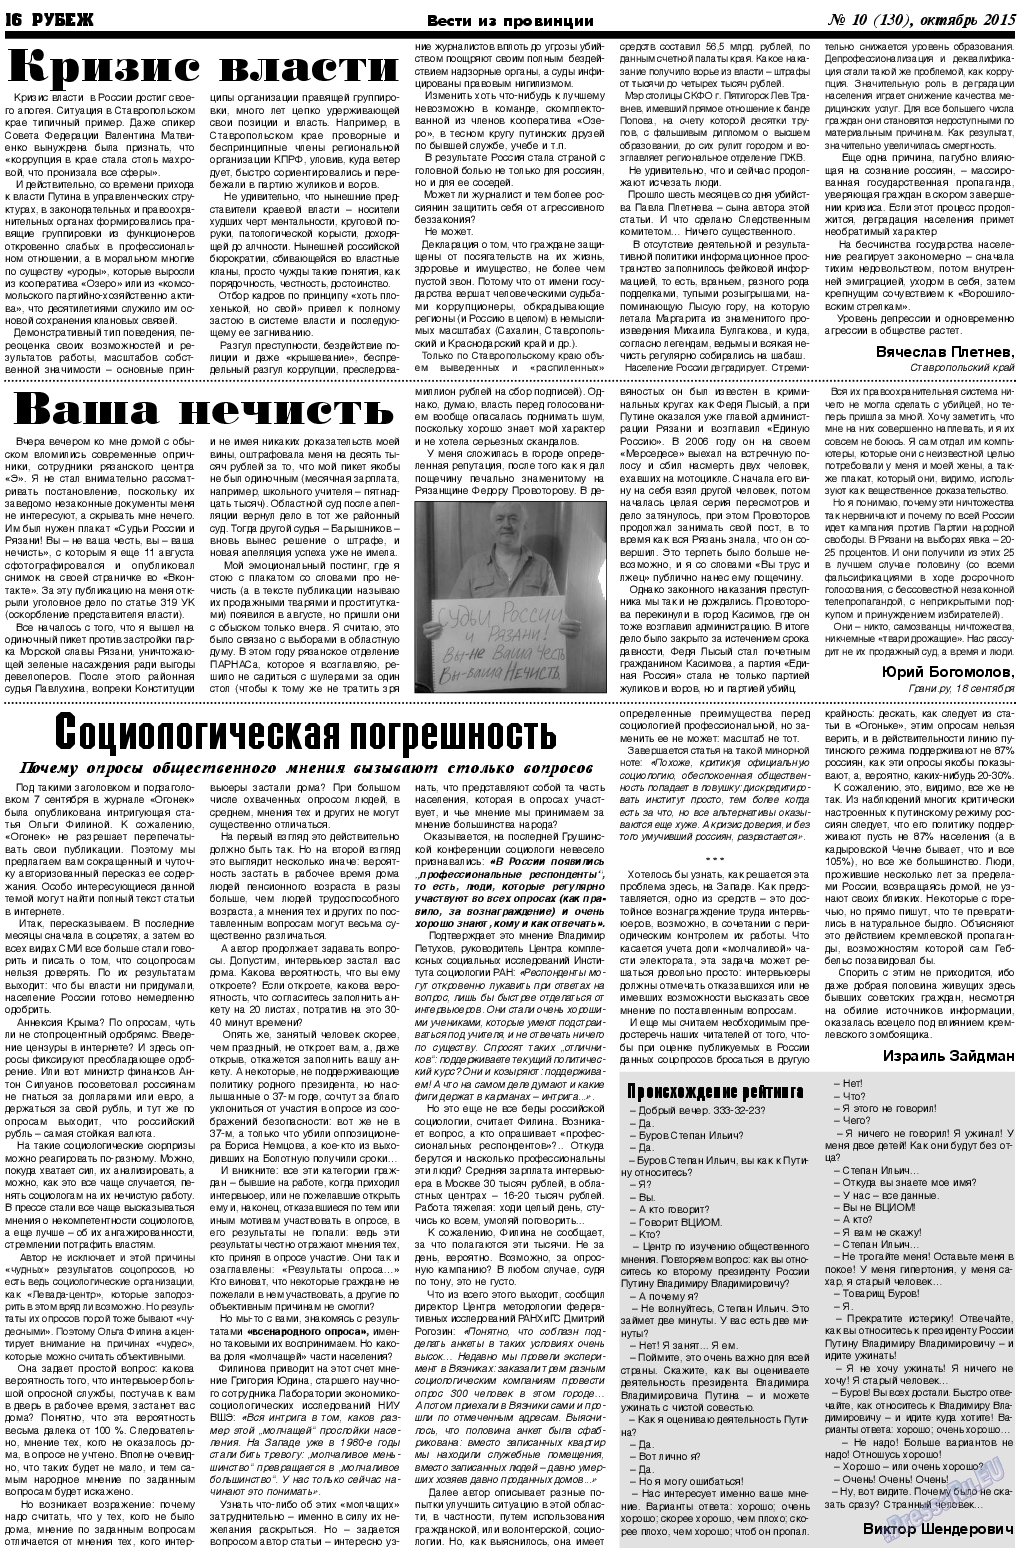 Рубеж (газета). 2015 год, номер 10, стр. 16